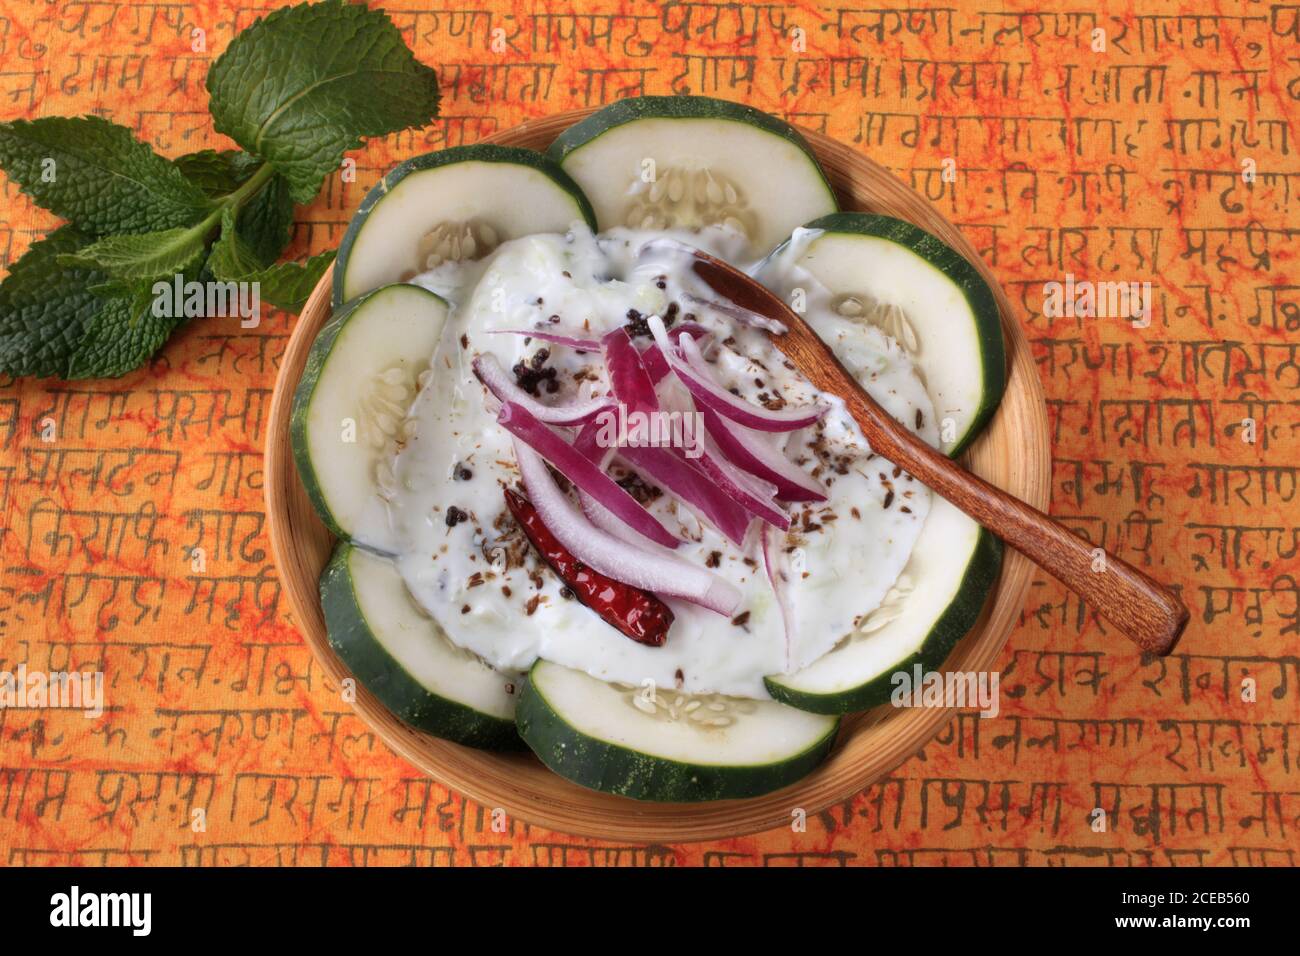 Raita de pepino, sur de Asia, yogur de acompañamiento, Foto de stock